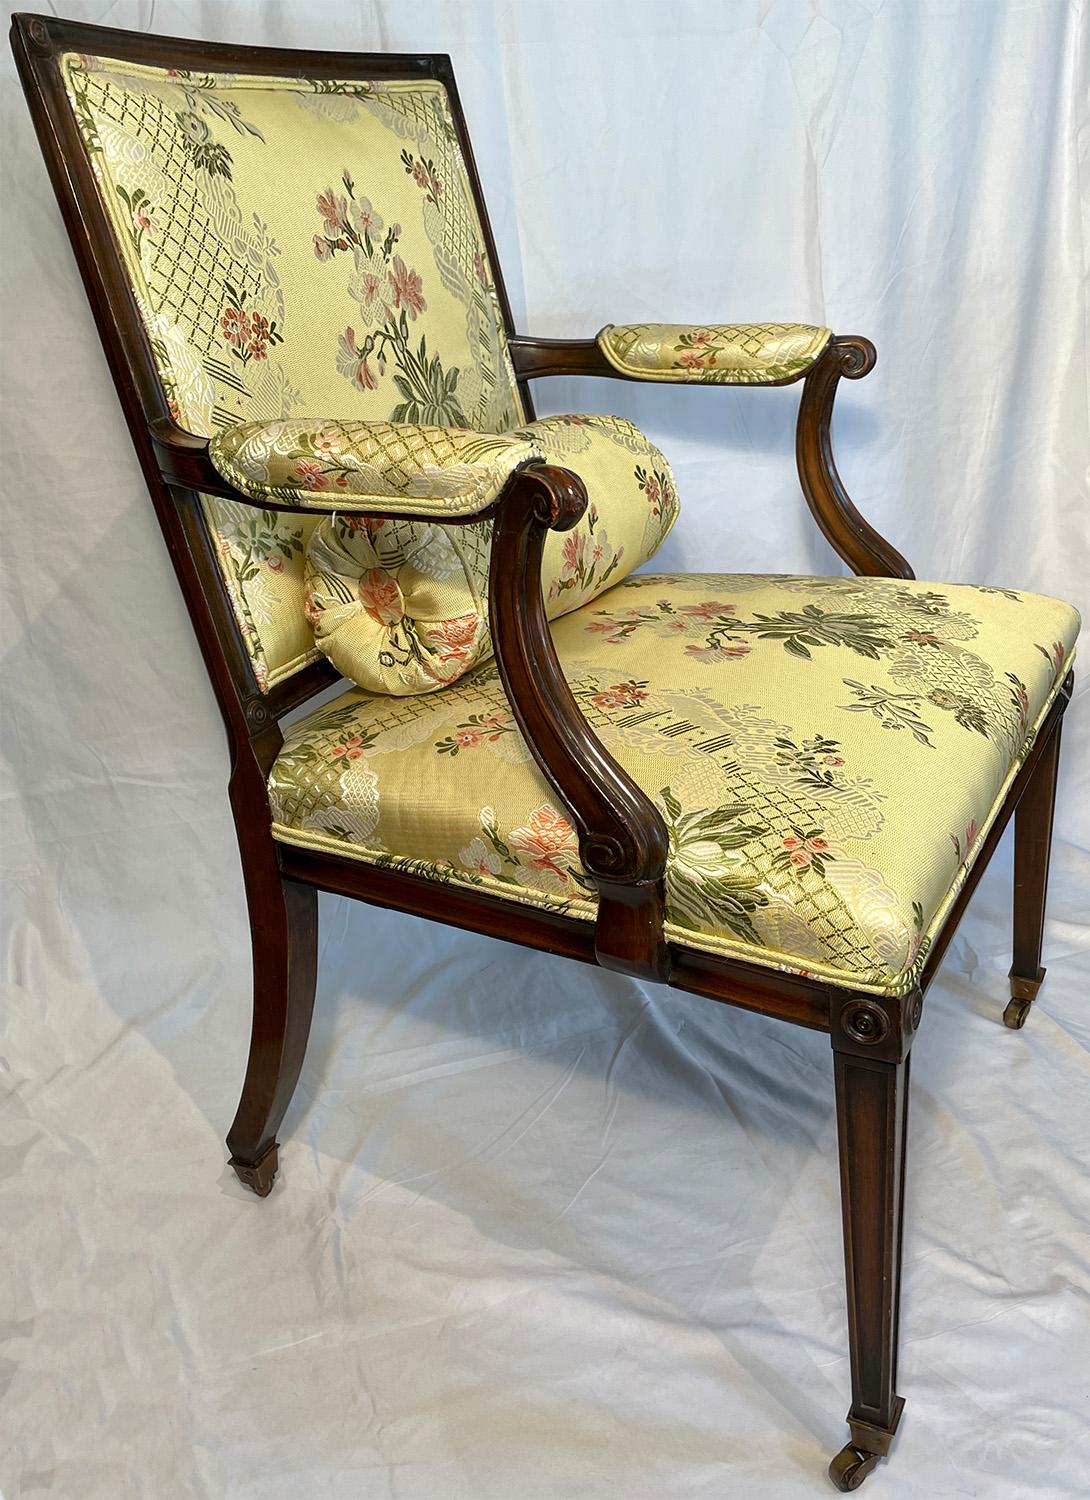 Chaise de bureau anglaise ancienne en acajou avec tissu Scalamandre, Circa 1850-1860.